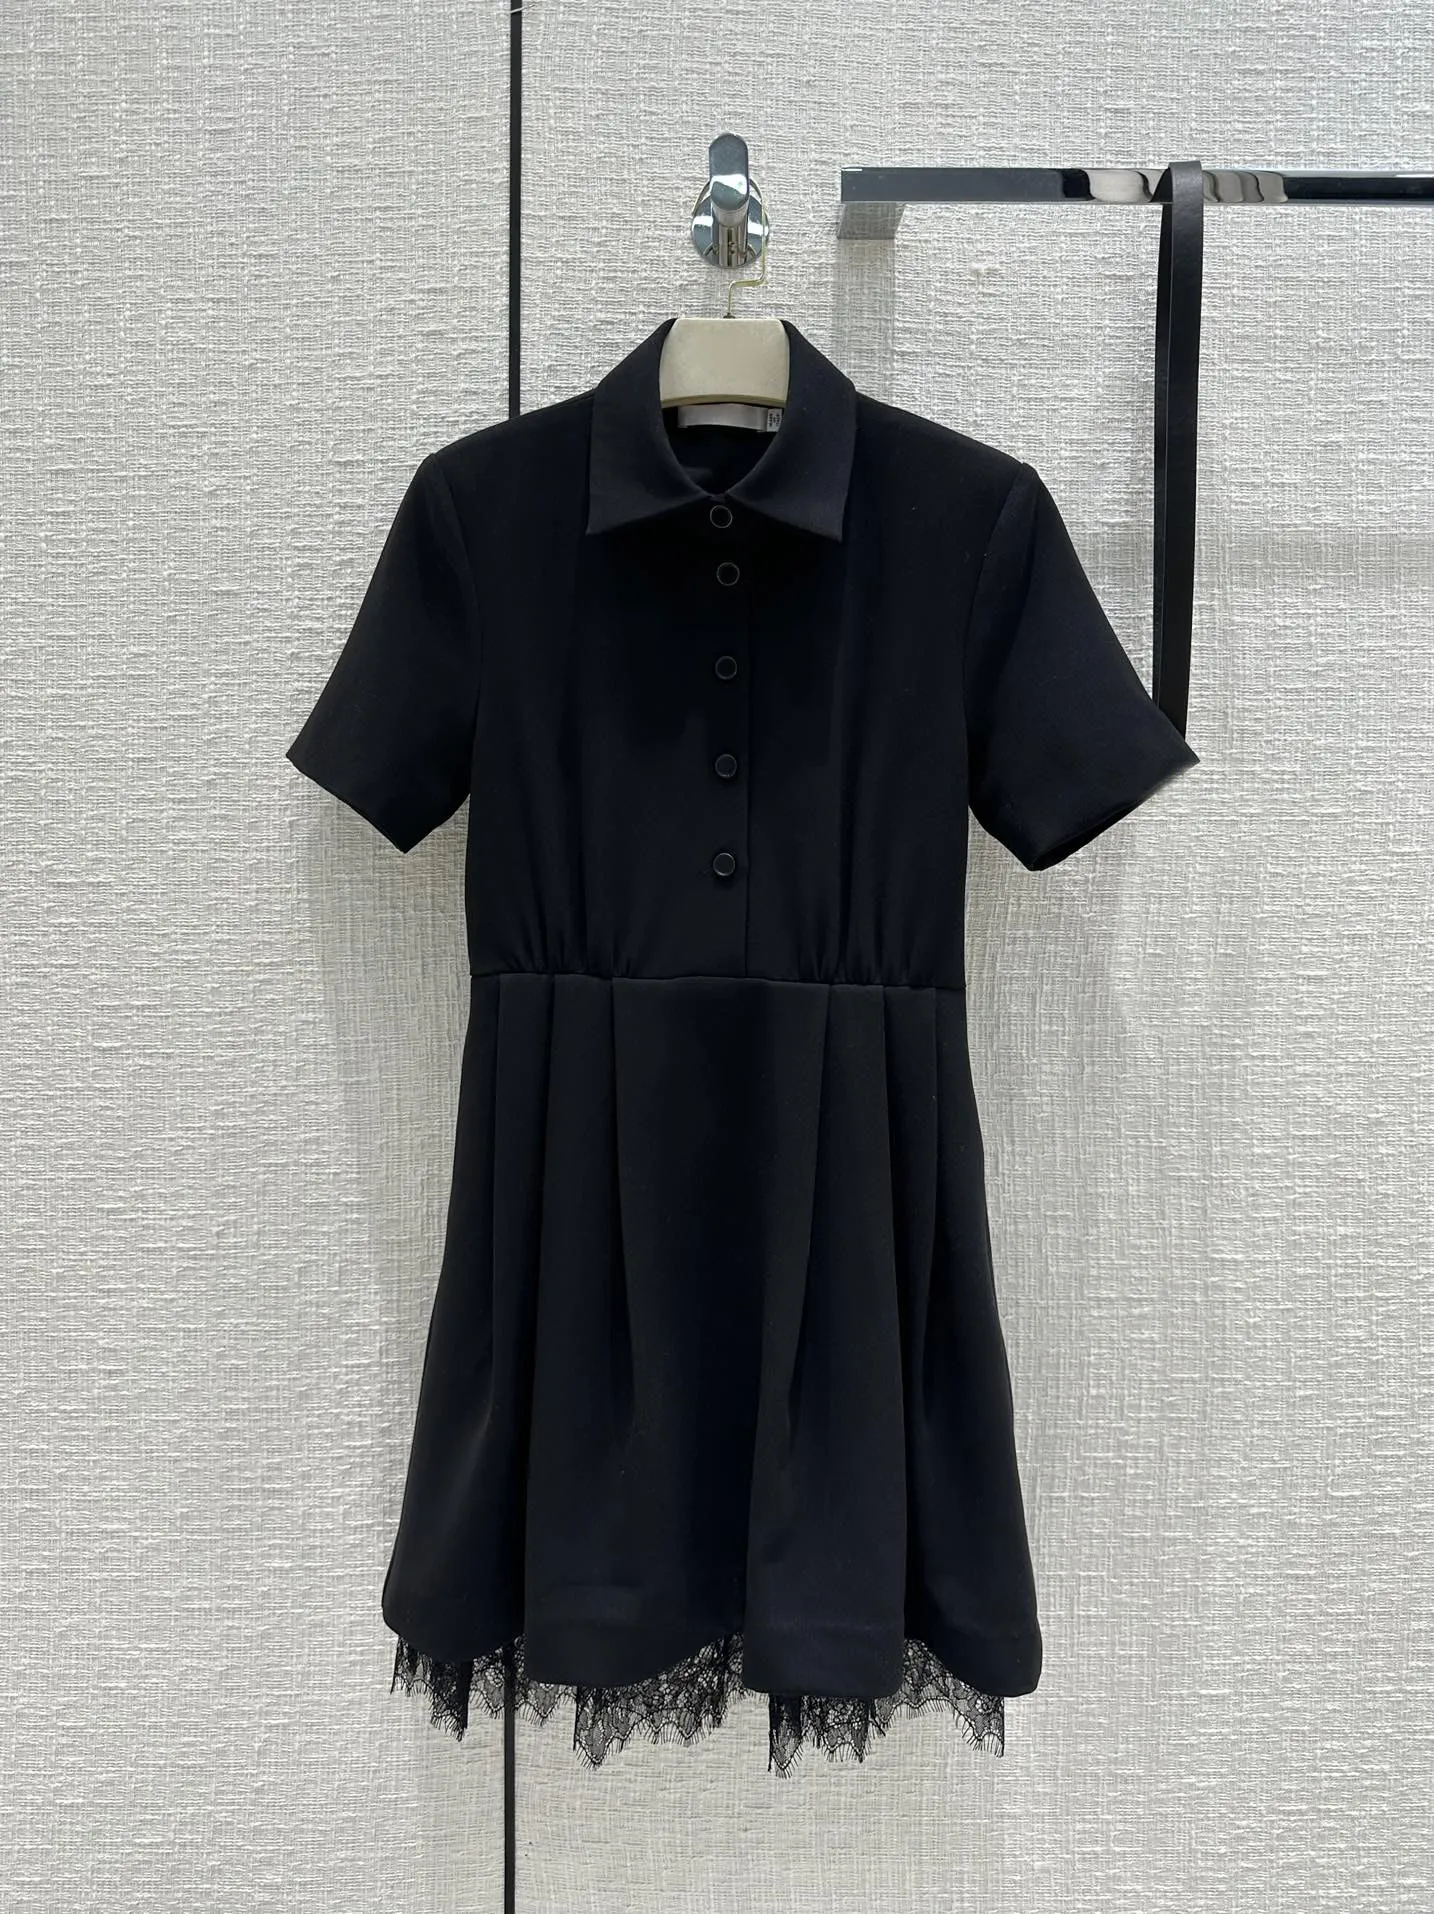 

2023 Short-sleeved black dress, classic design, waist fold design to create a small waist shaggy skirt